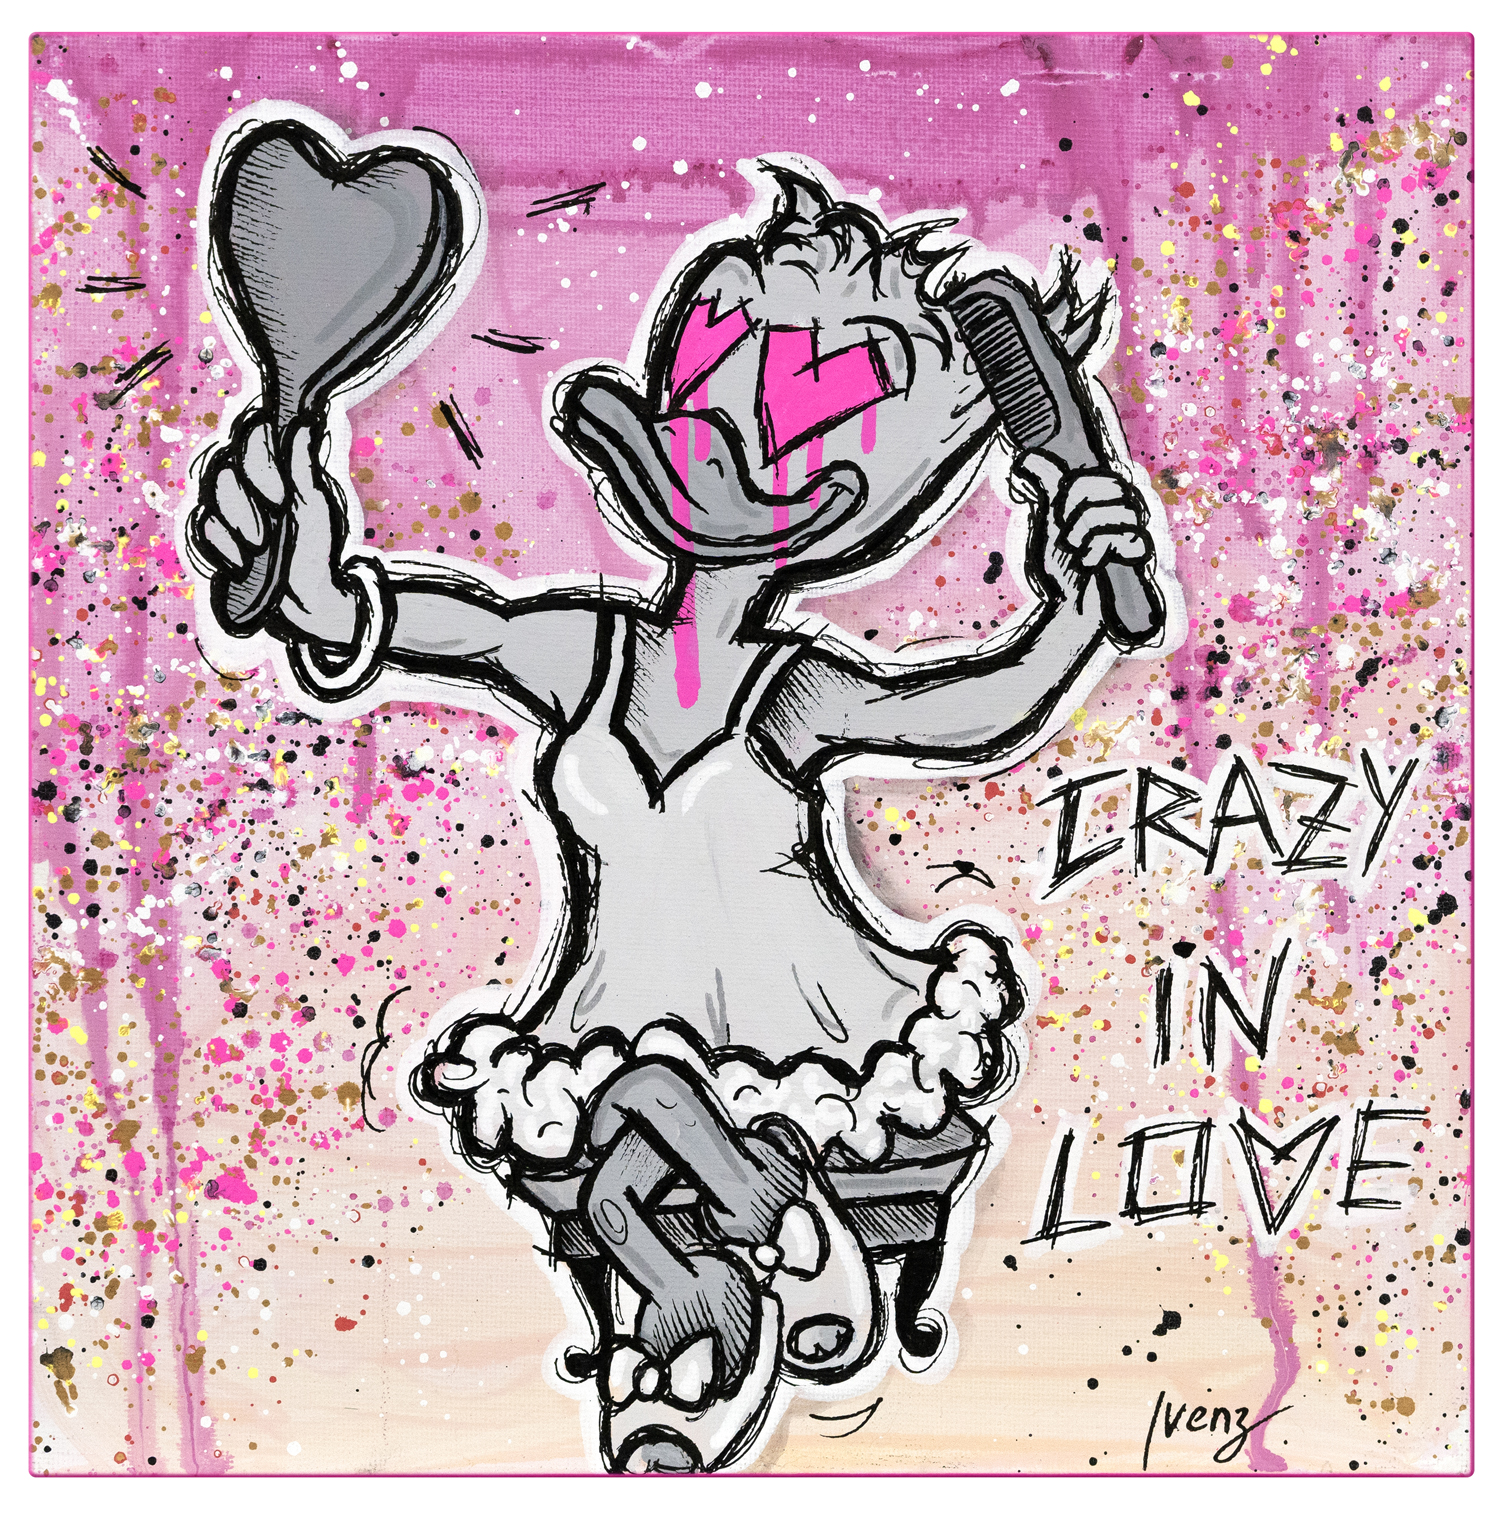 Crazy in love - Selflove